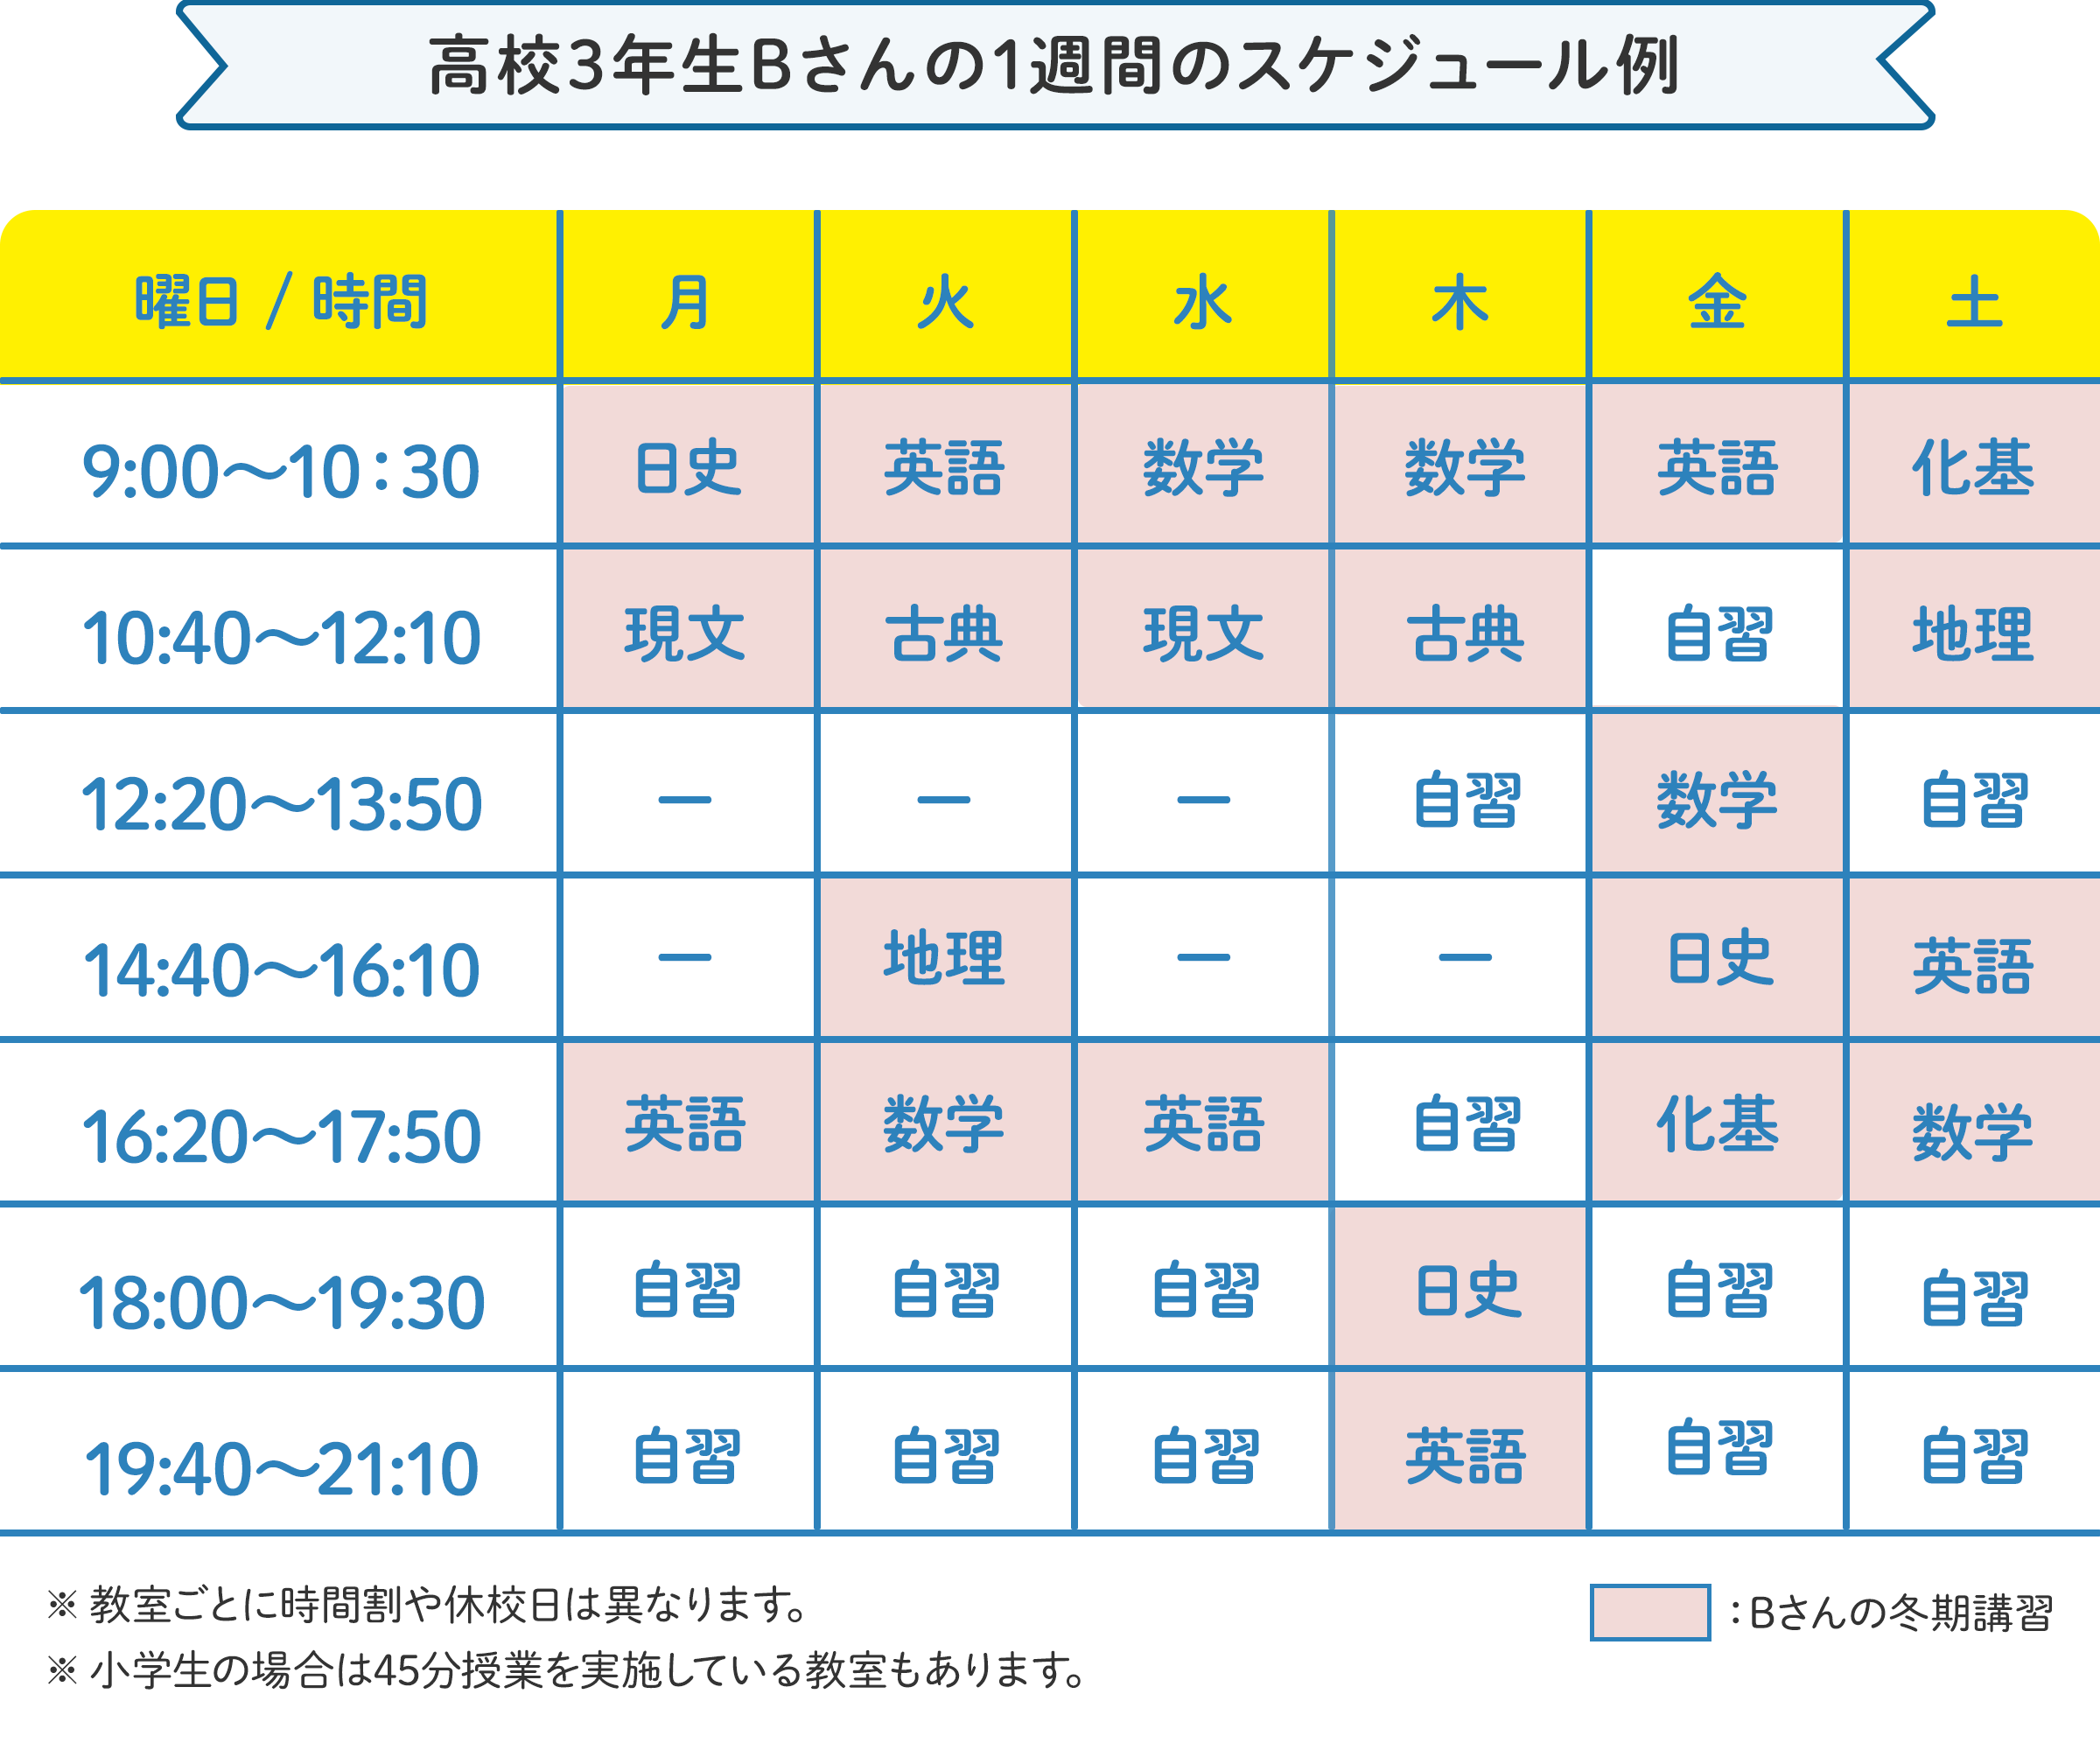 高校3年生Bさんの1週間のスケジュール例 月曜日：9時～10時30分 に日本史、10時40分～12時10分 に現代文、16時20分～17時50分 に英語。火曜日：9時～10時30分 に英語、10時40分～12時10分 に古典、14時40分～16時10分 に地理、16時20分～17時50分 に数学。水曜日：9時～10時30分 に数学、10時40分～12時10分 に現代文、16時20分～17時50分 に英語 の様にお住いの地域、学校の予定に合わせたスケジュールで通えます。 ※教室ごとに時間割や開校日は異なります。 ※小学生の場合は45分授業を実施している教室もございます。